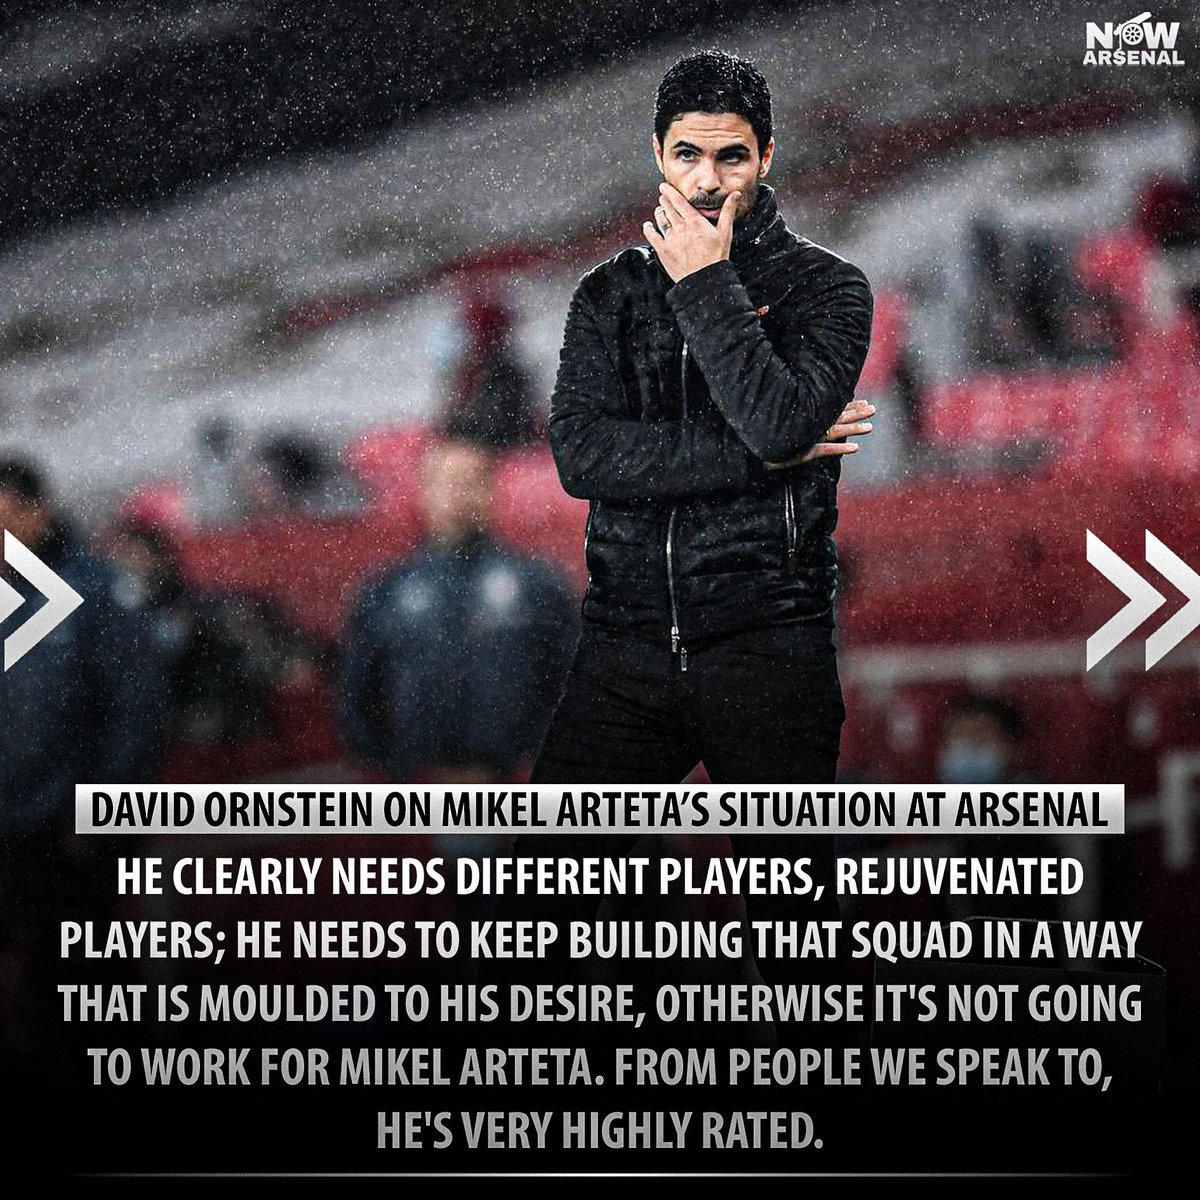  @David_Ornstein on Mikel Arteta’s future & next season at Arsenal...